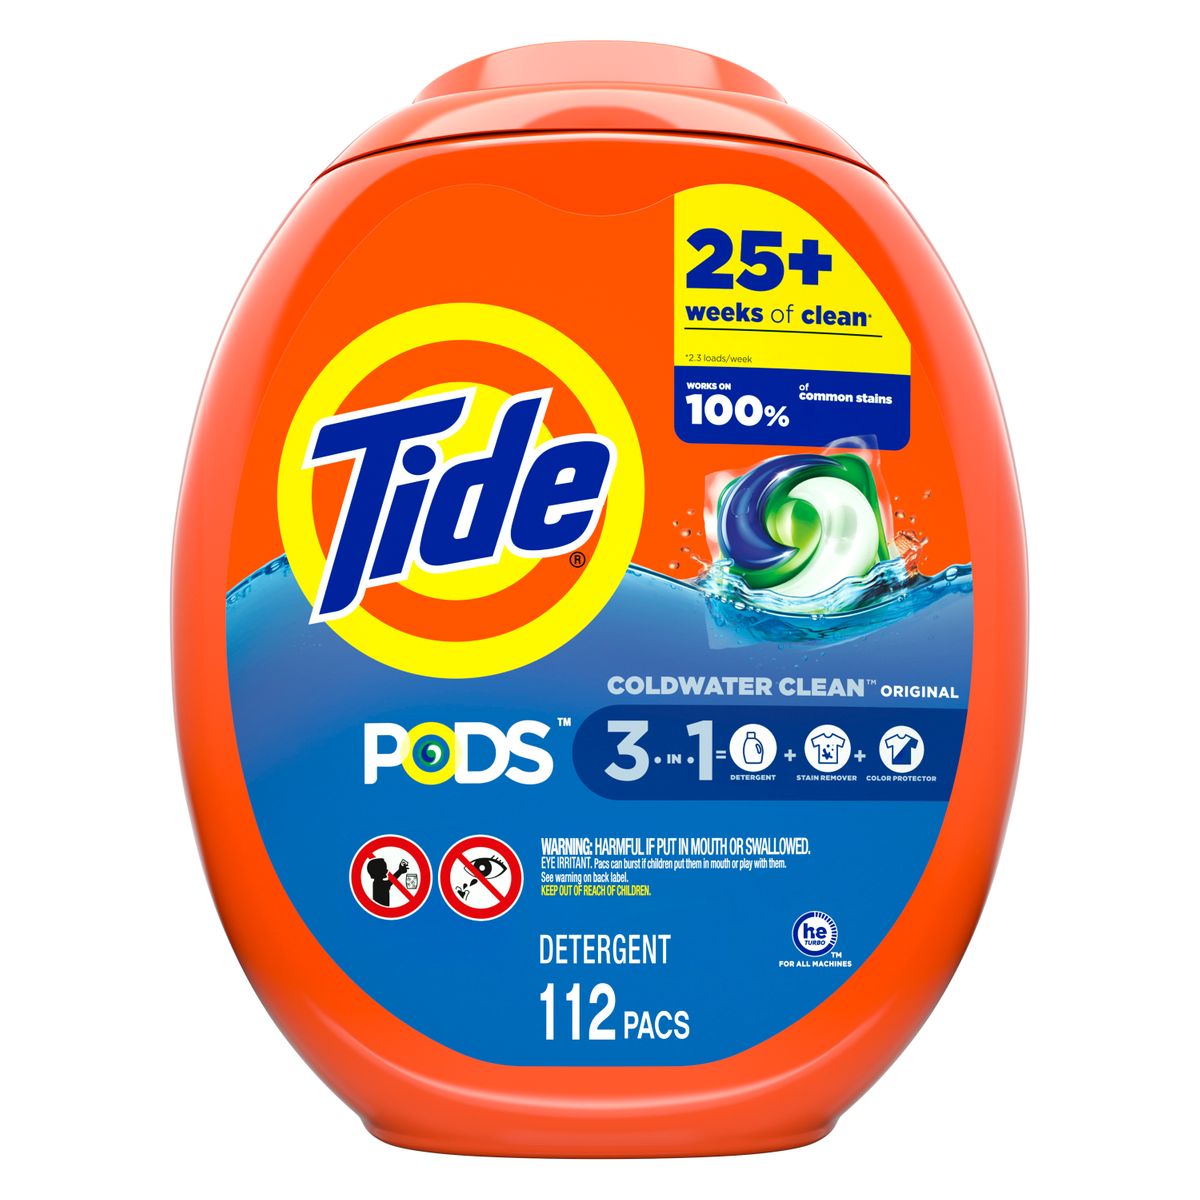 楽天Walmart 楽天市場店[RDY] [送料無料] Tide PODS 洗濯用洗剤 オリジナル香り 112個入り [楽天海外通販] | Tide PODS Laundry Detergent Original Scent, 112 count